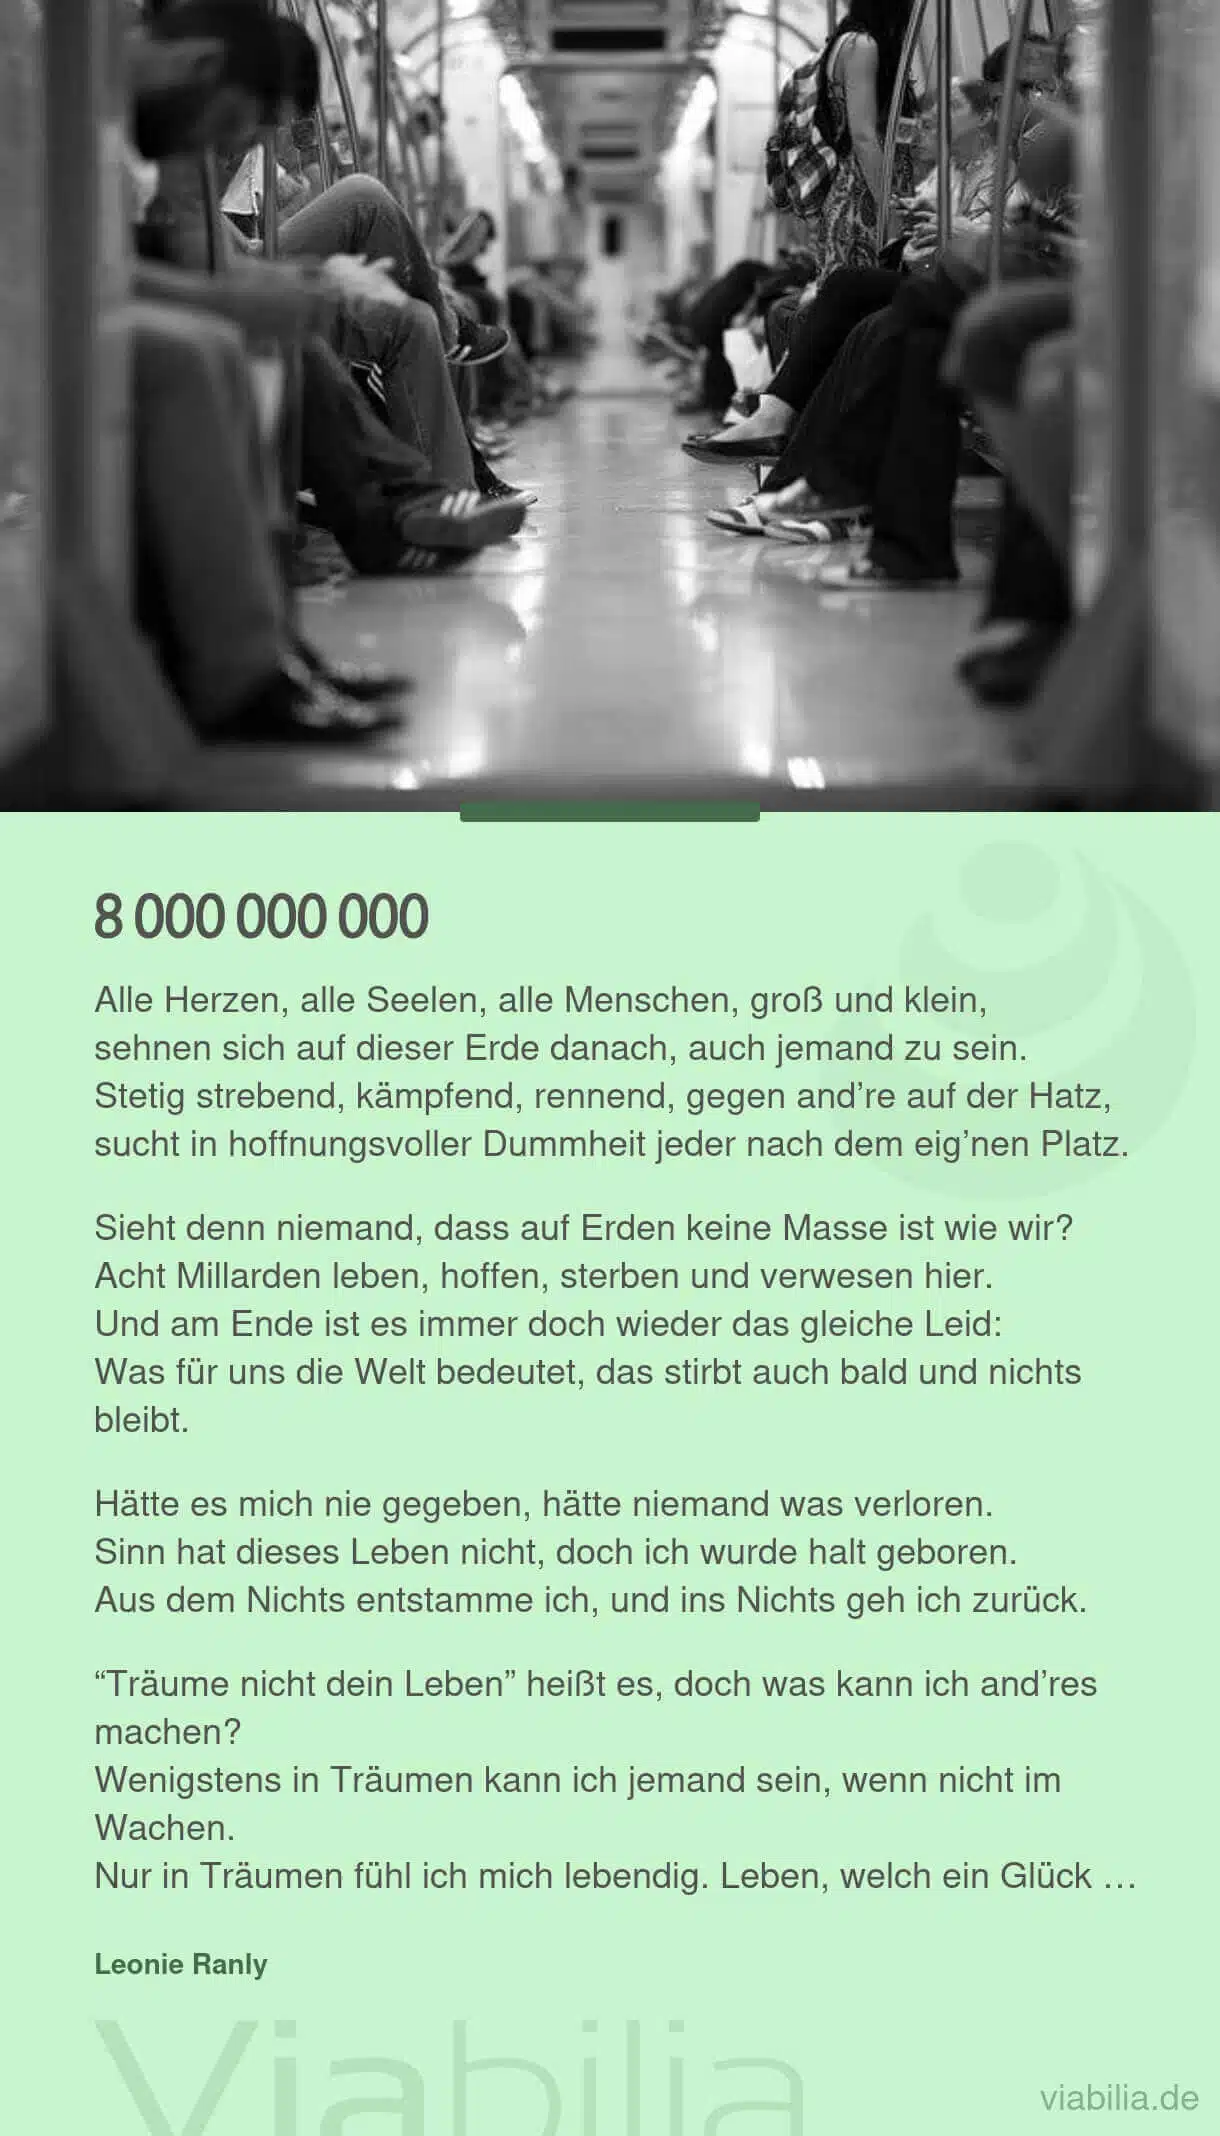 8 Milliarden-Menschen: Gedicht über Überbevölkerung